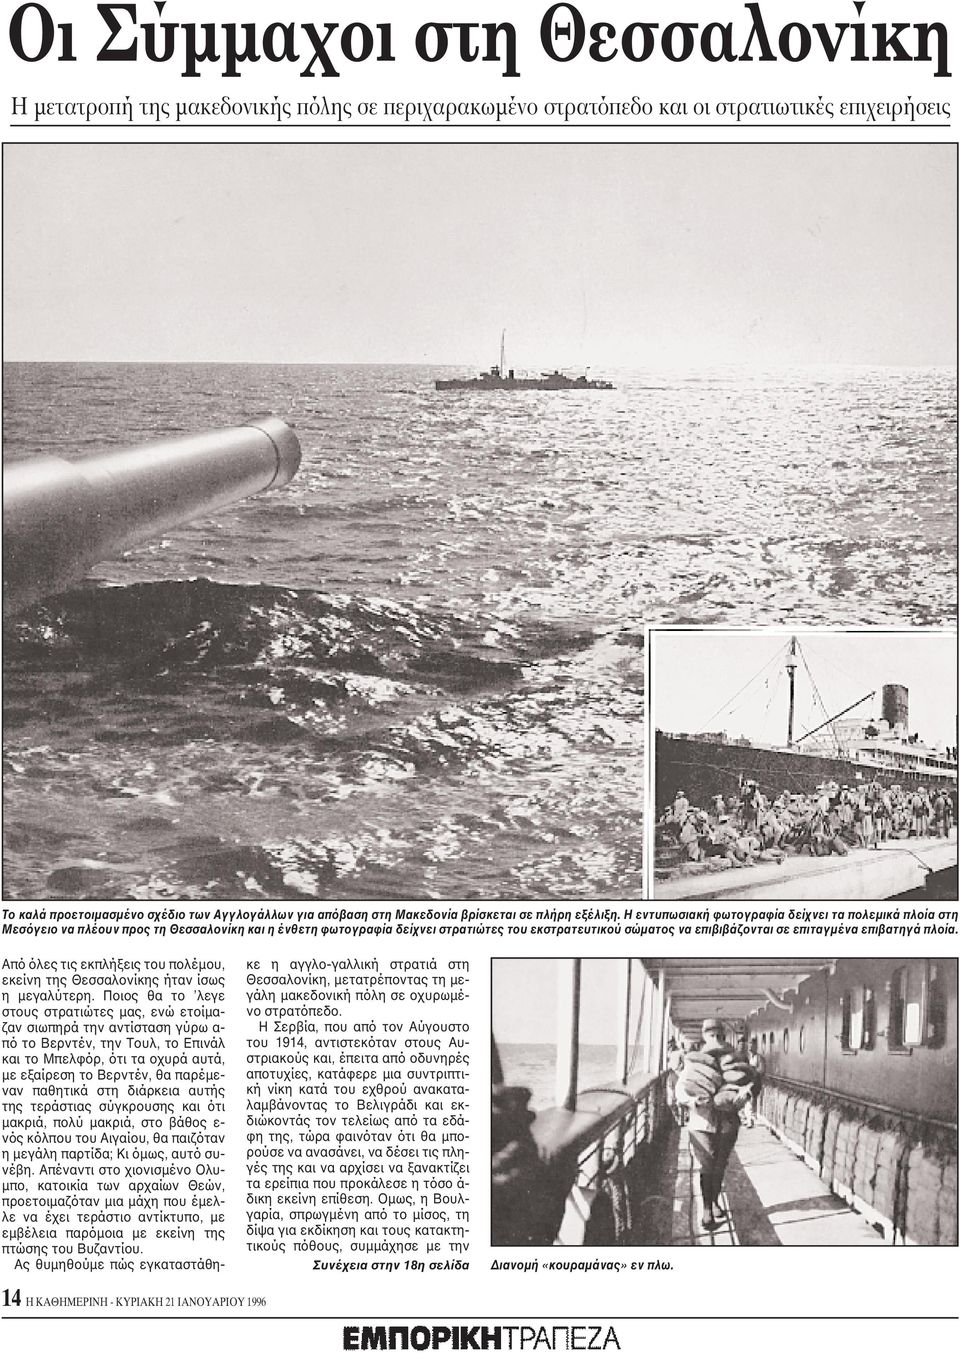 H εντυπωσιακή φωτογραφία δείχνει τα πολεμικά πλοία στη Mεσόγειο να πλέουν προς τη Θεσσαλονίκη και η ένθετη φωτογραφία δείχνει στρατιώτες του εκστρατευτικού σώματος να επιβιβάζονται σε επιταγμένα